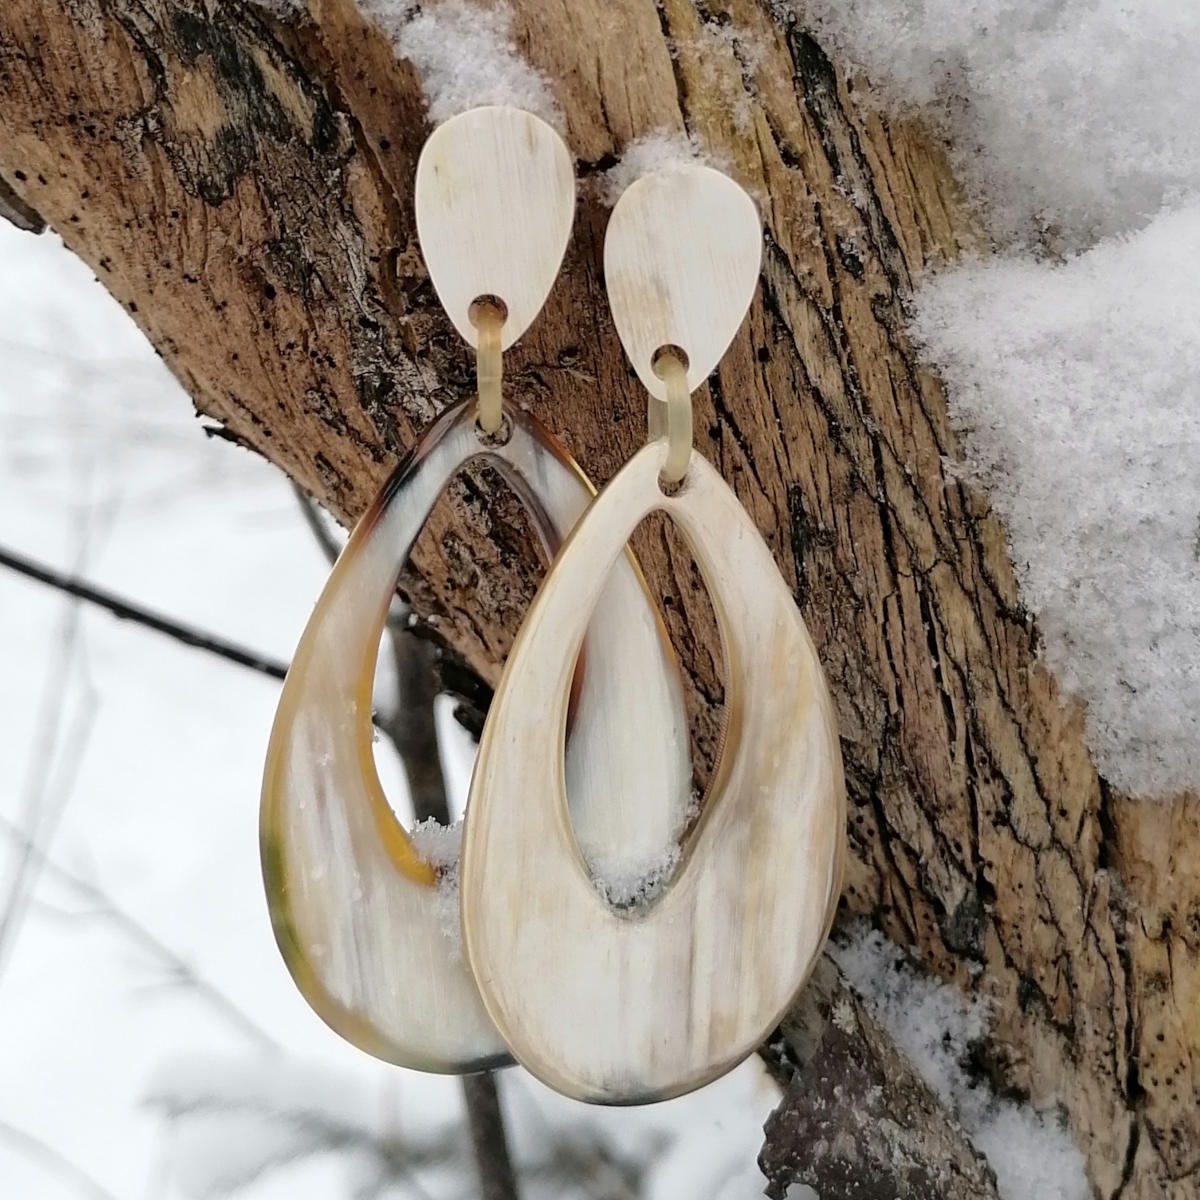 horn earrings in a snowy forest